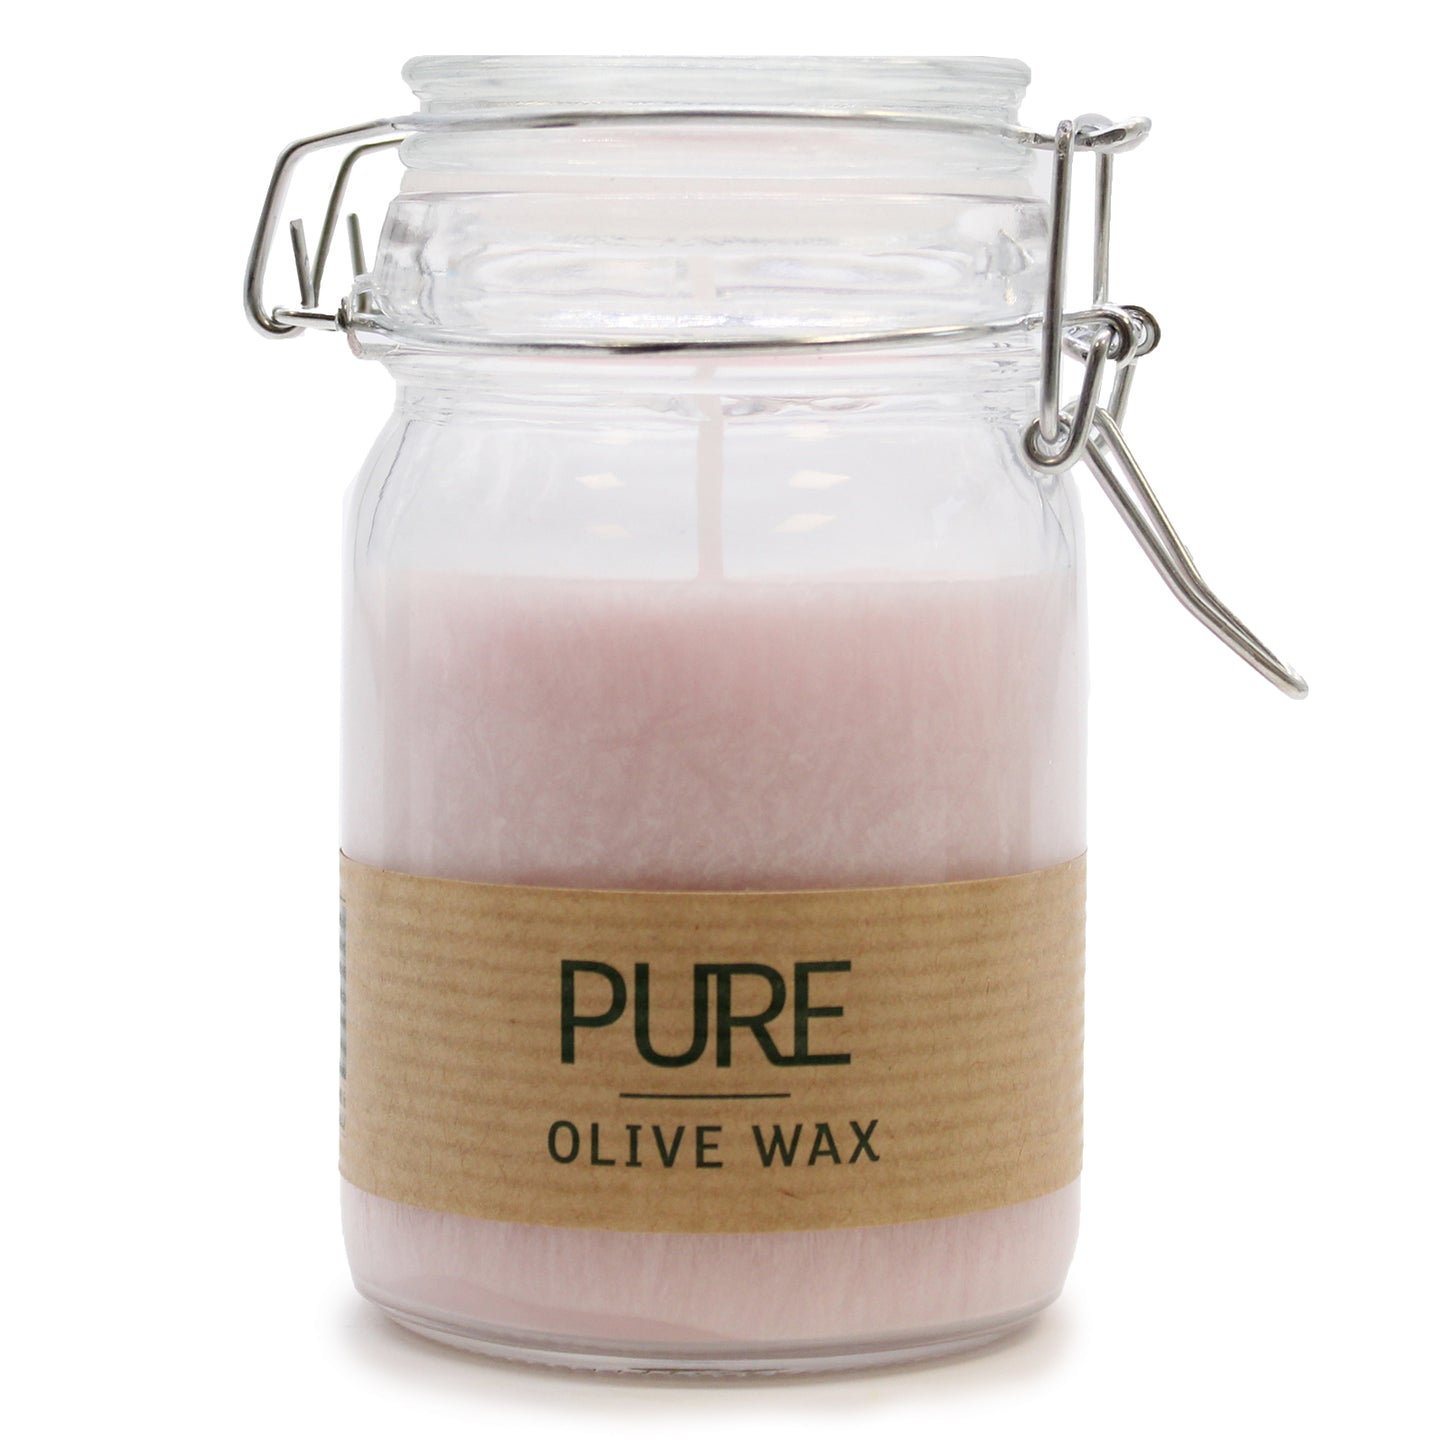 Vegan Pure Olive Wax Candle Jars